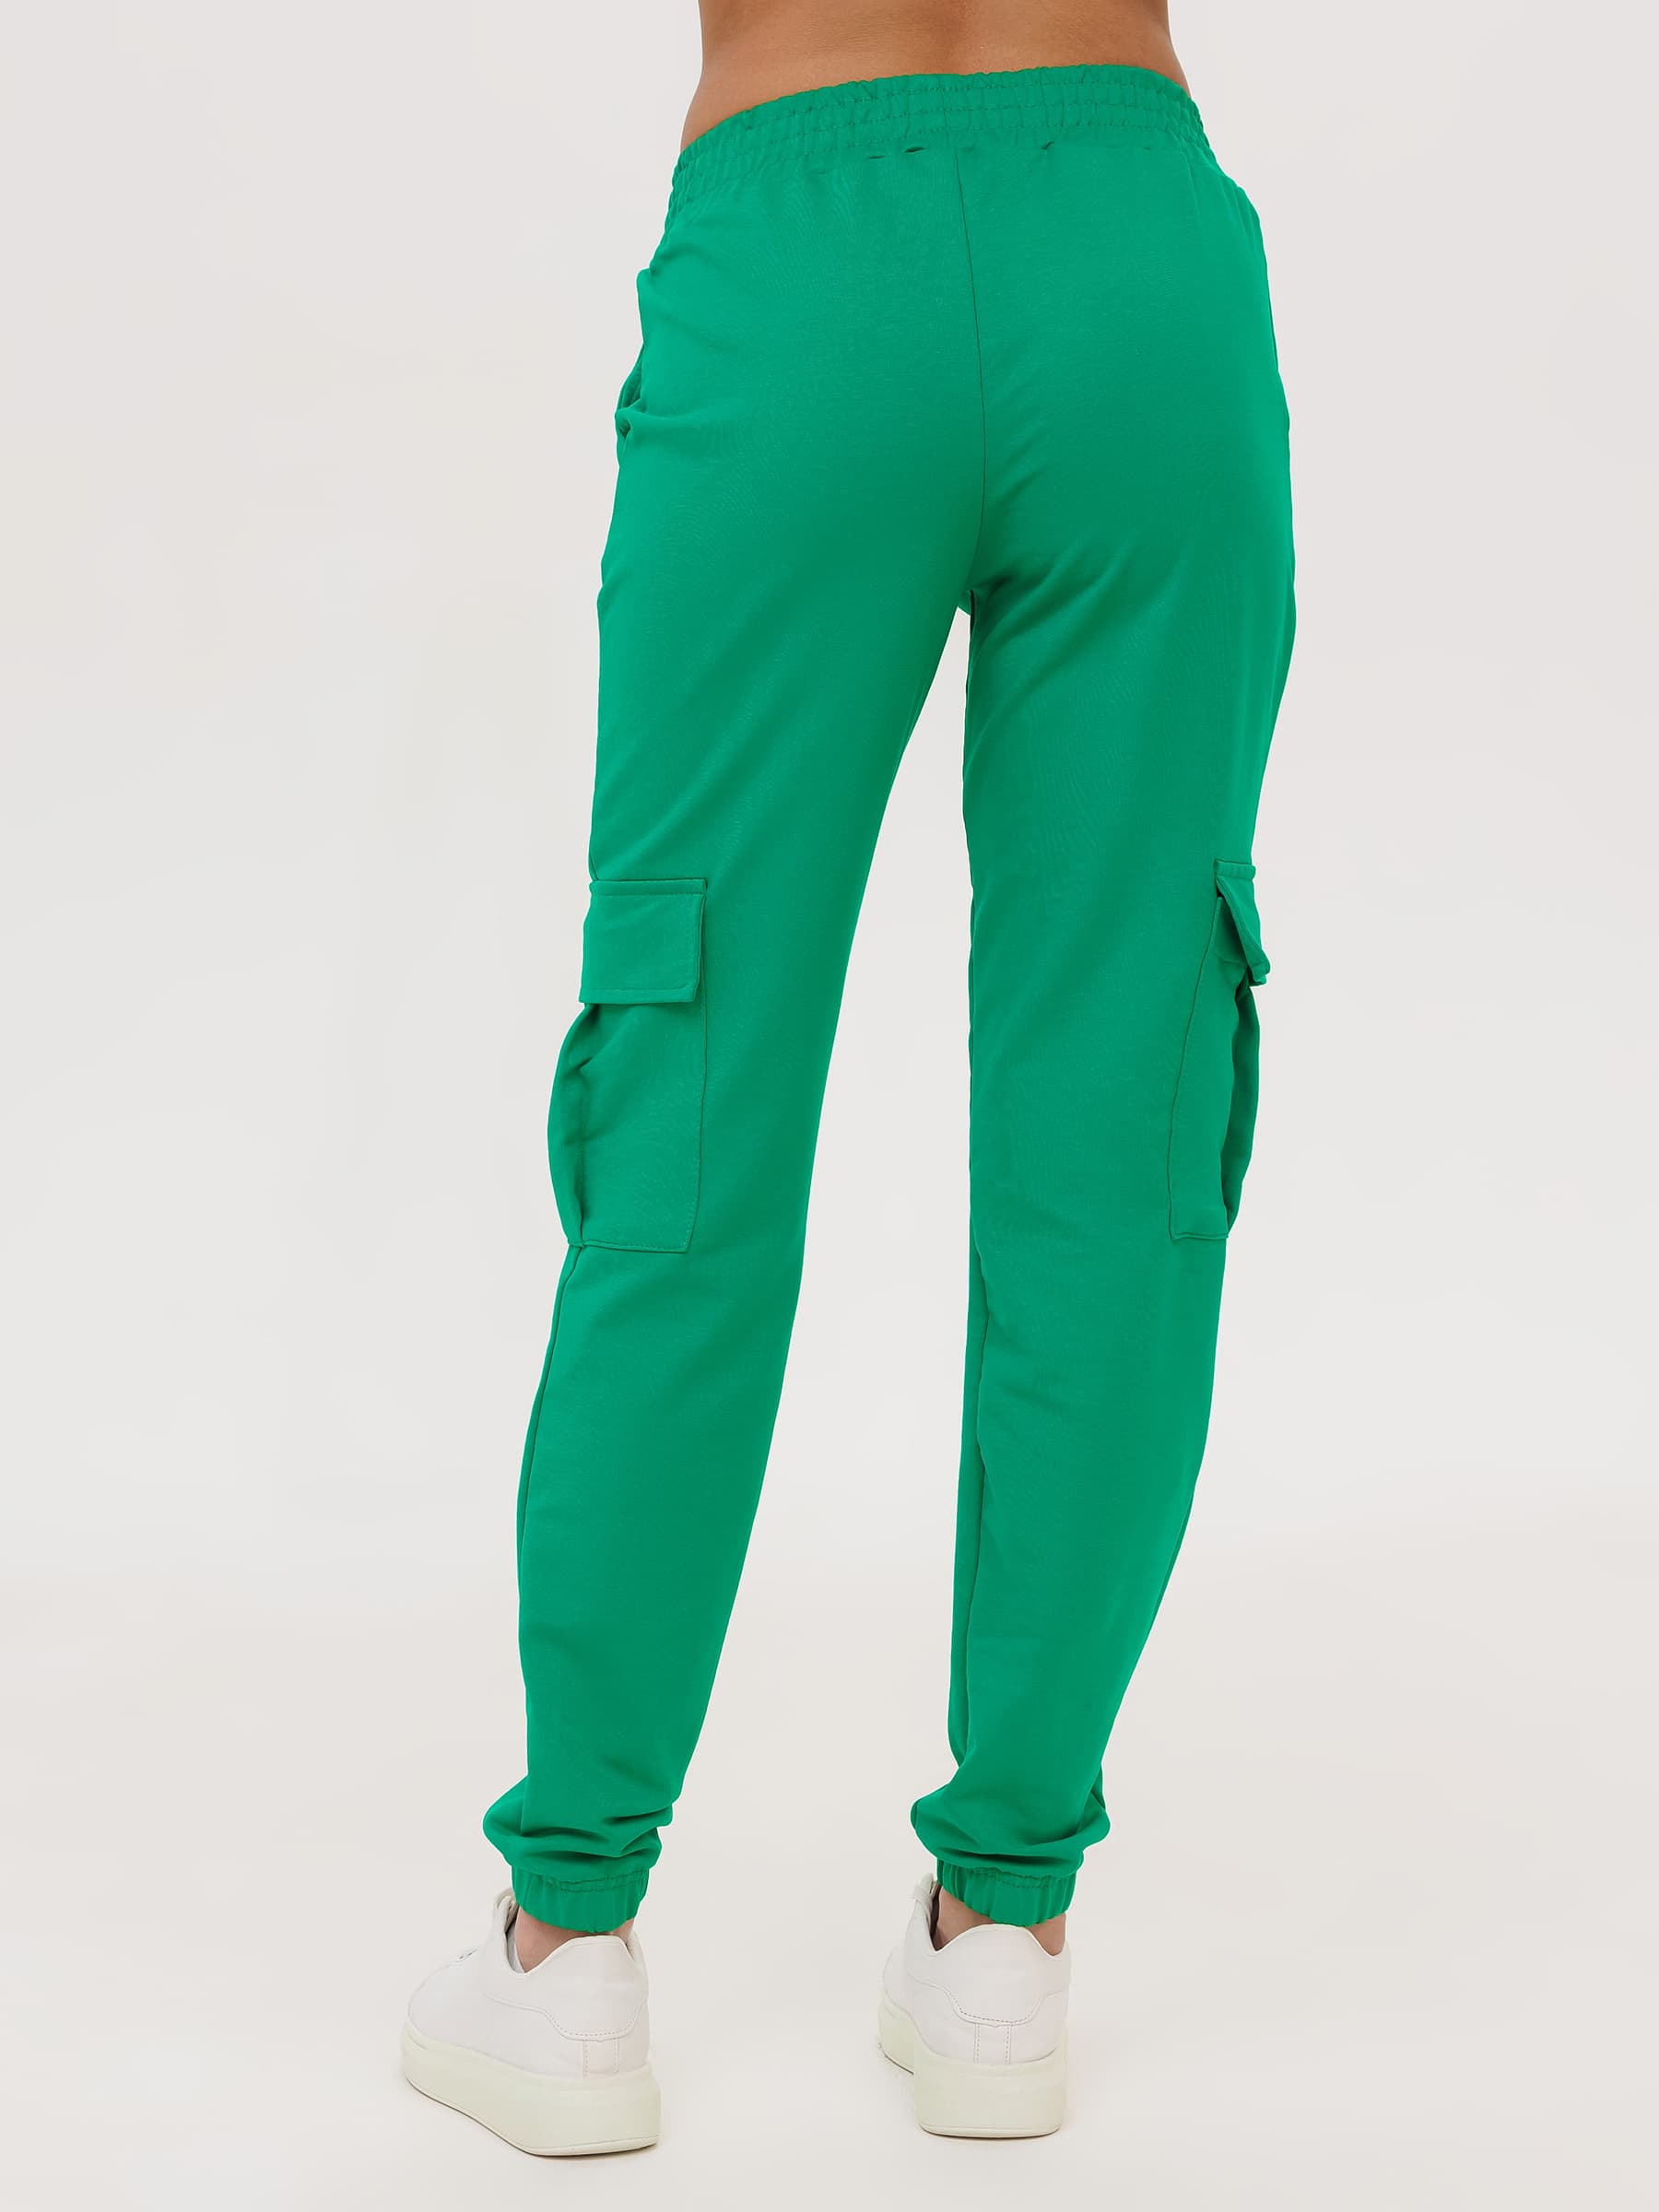 Жен. брюки повседневные арт. 23-0524 Зеленый р. 52 Моделлини, размер 52 - фото 10